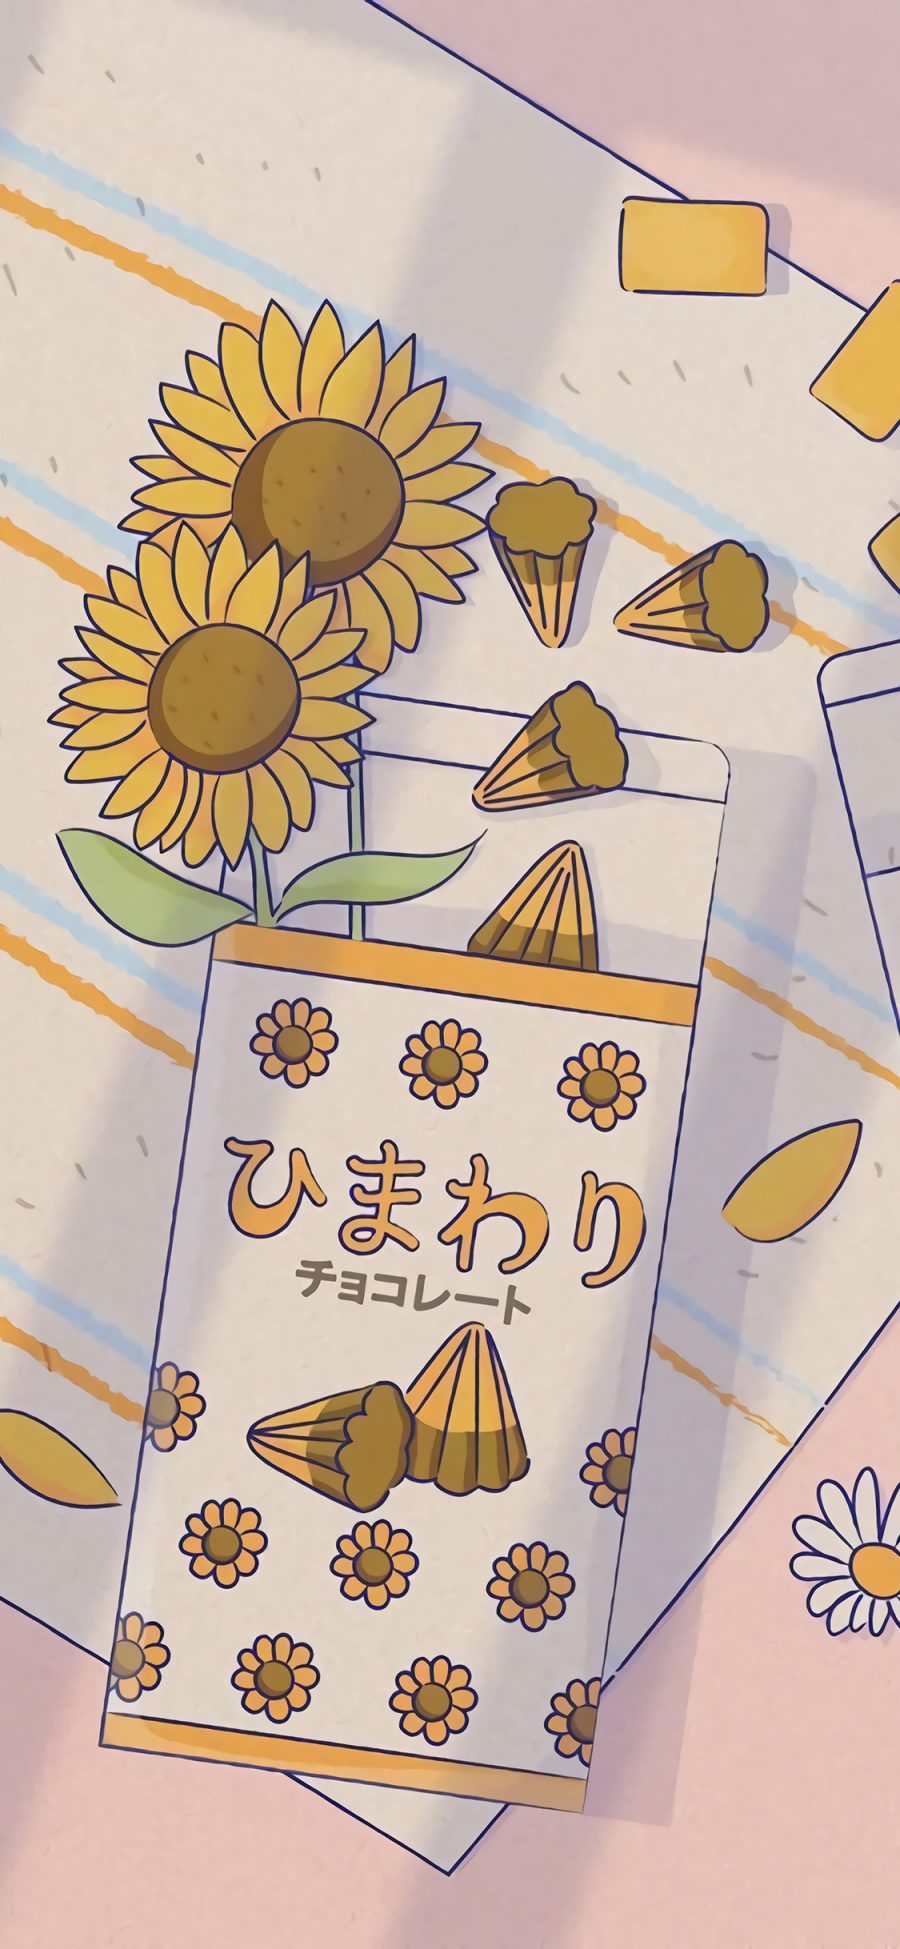 [2436×1125]插图 夏日零食 系列 向日葵 苹果手机动漫壁纸图片